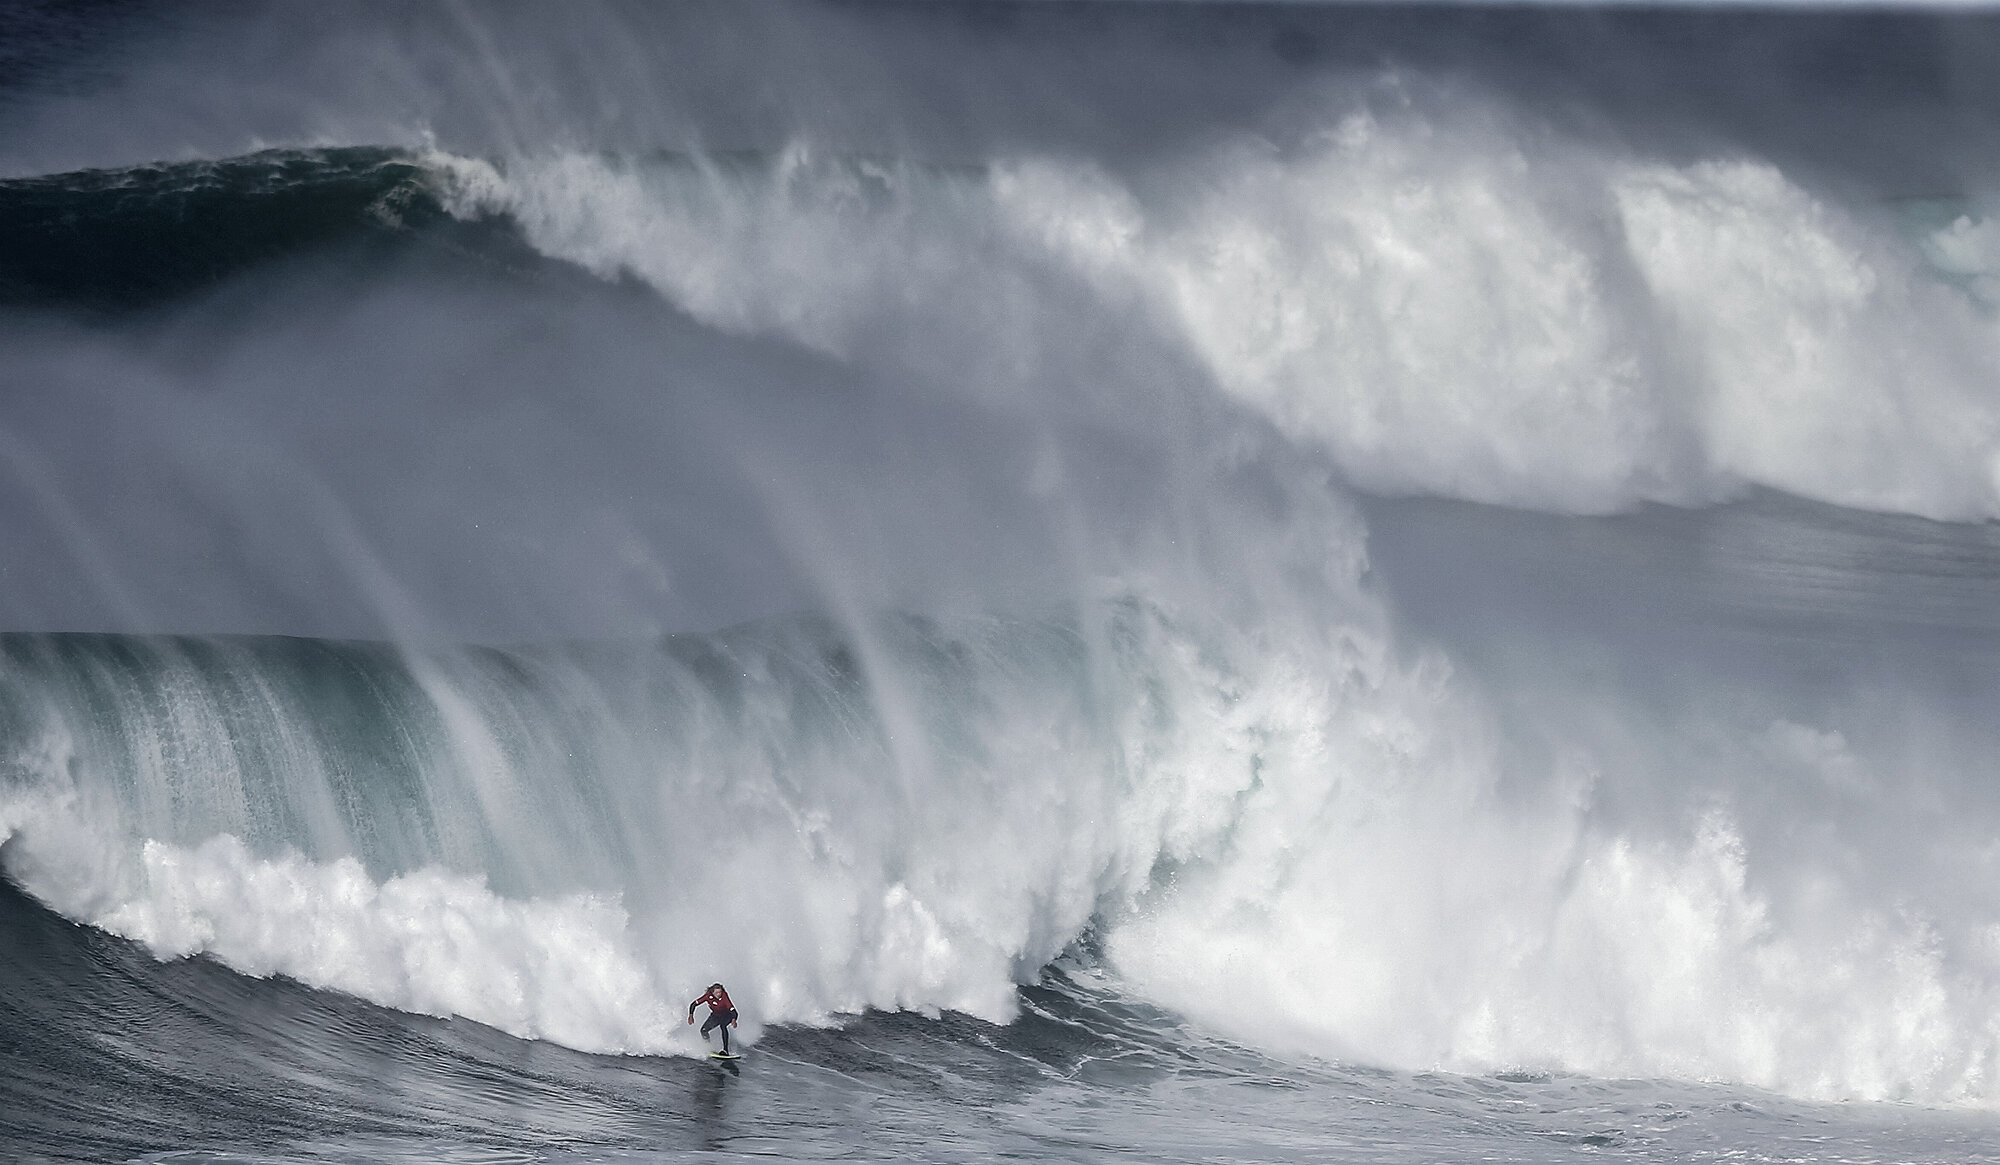 Голые мужчины в Японии, гнев женщин в Мексике, огромные волны в Португалии.  Выходные в фотографиях